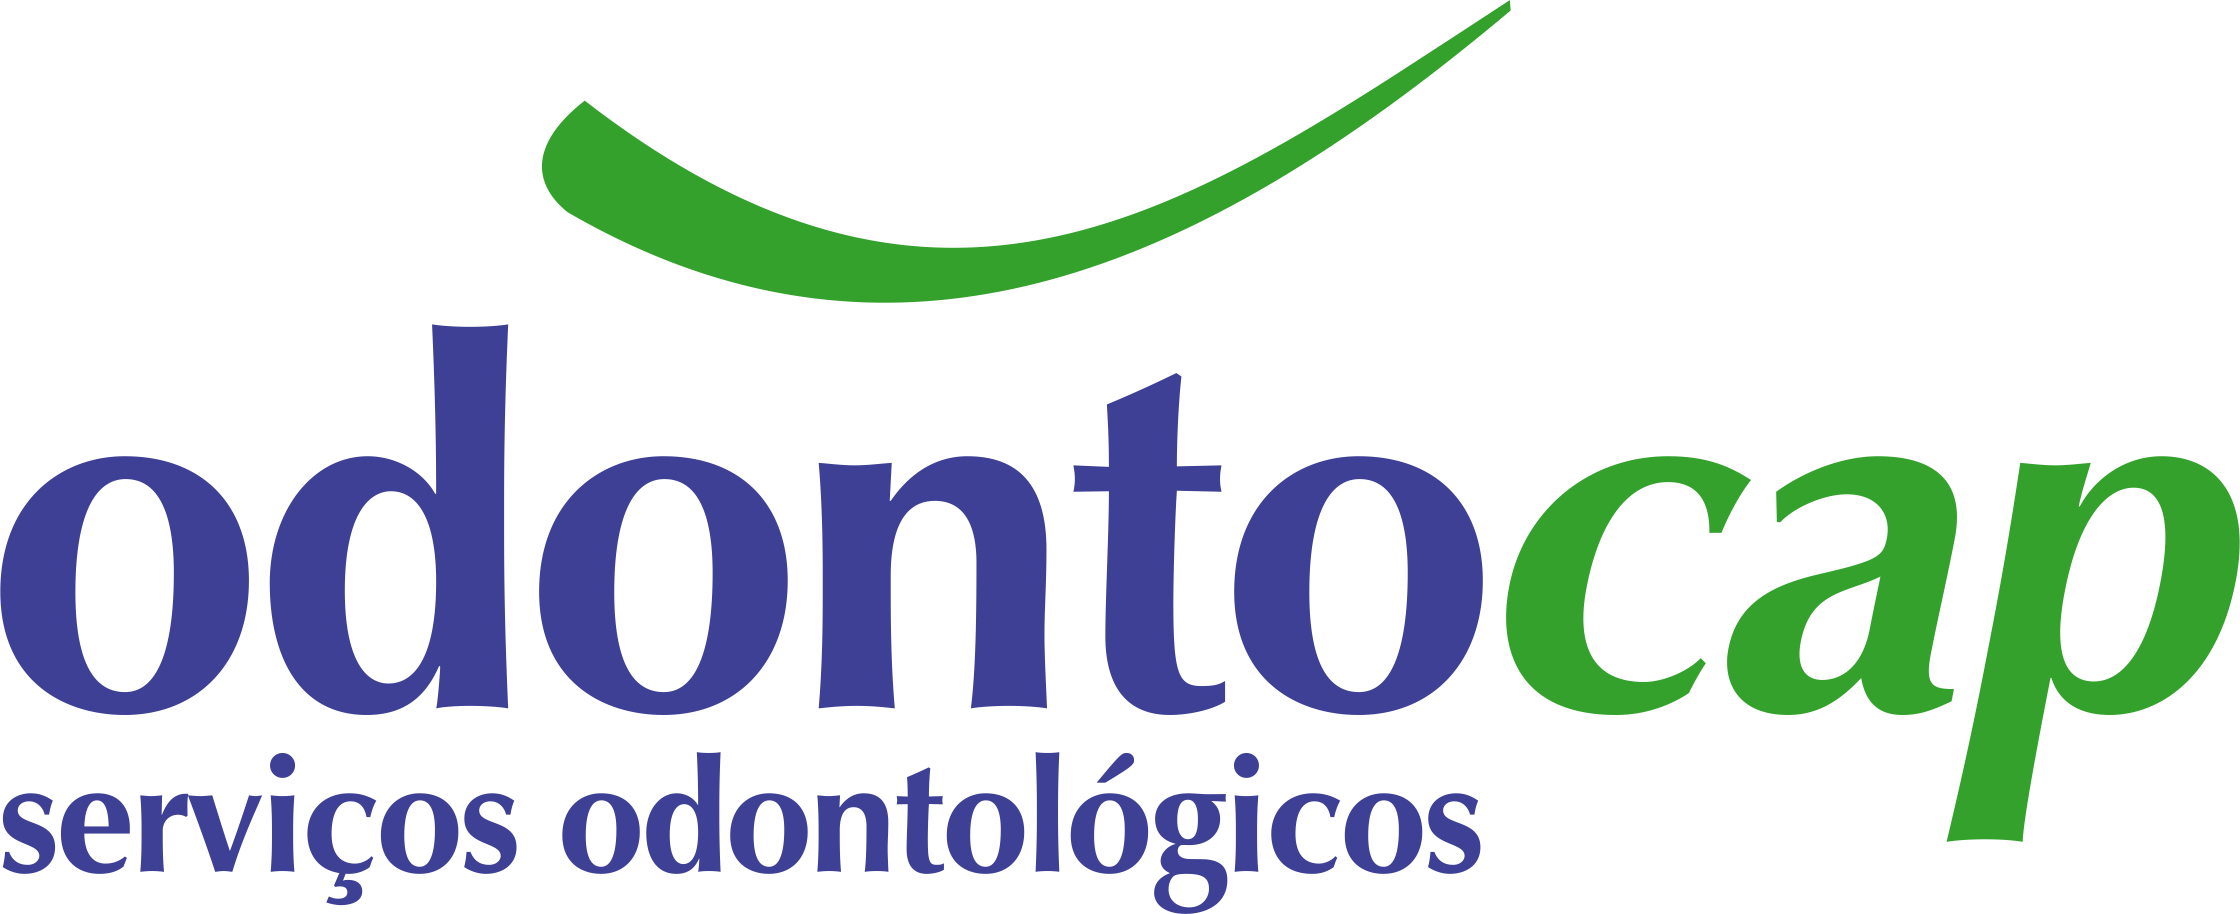 Odontocap - Clínicas Odontológicas, Aparelho ortodôntico, Tratamento em Ortodontia, Implante, Dentista